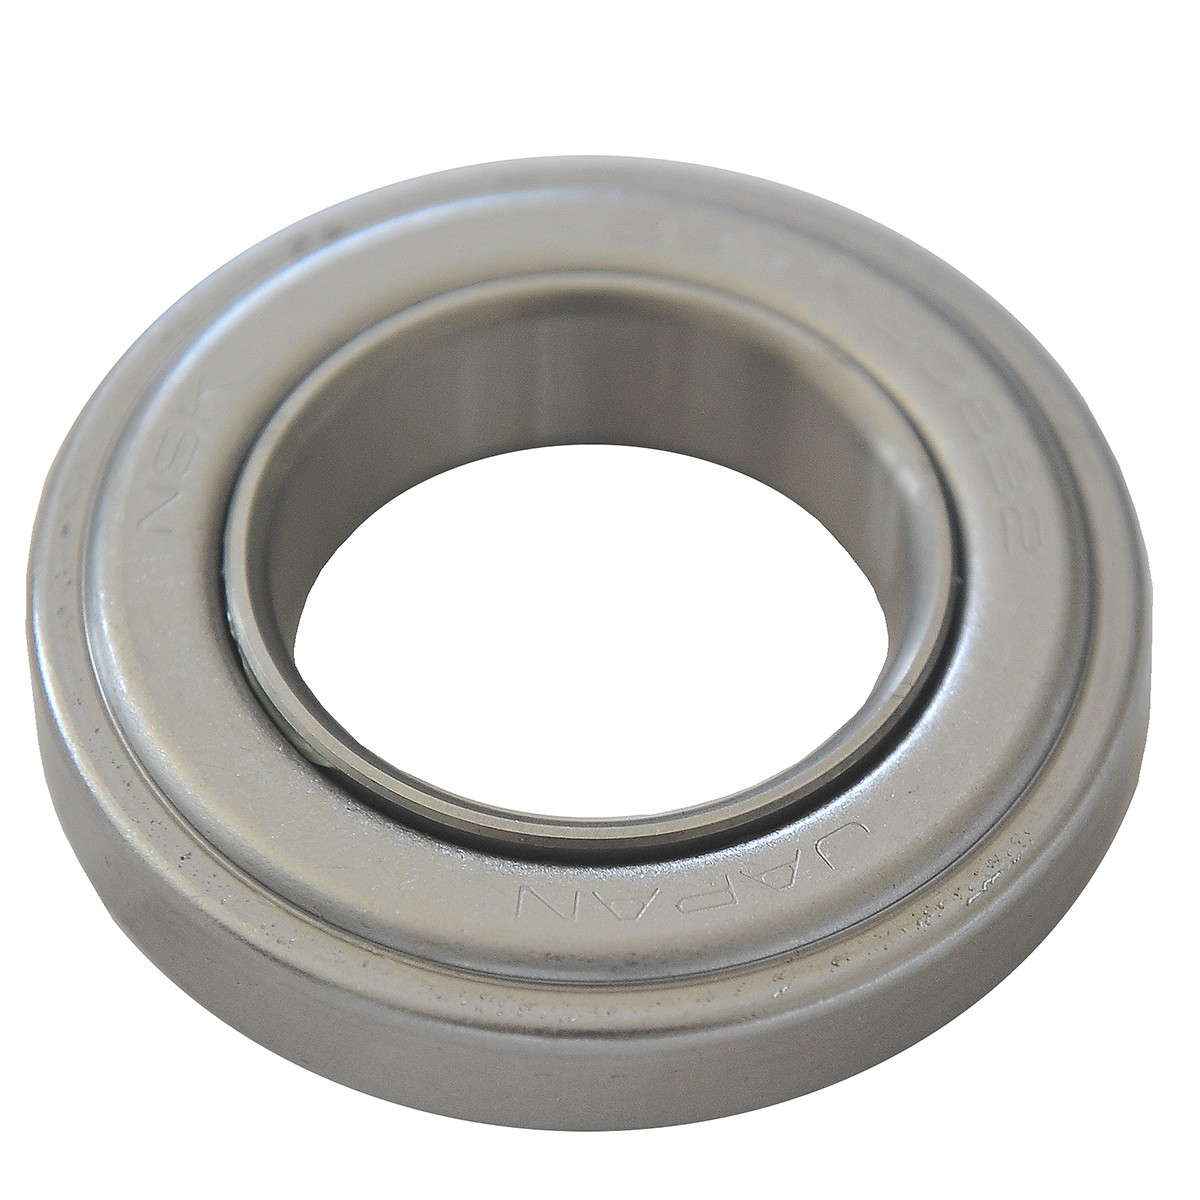 Clutch release bearing / 38.1 x 67 x 16.50 mm / Iseki TM3160 / 24TK308B2 / 1491-120-001-00